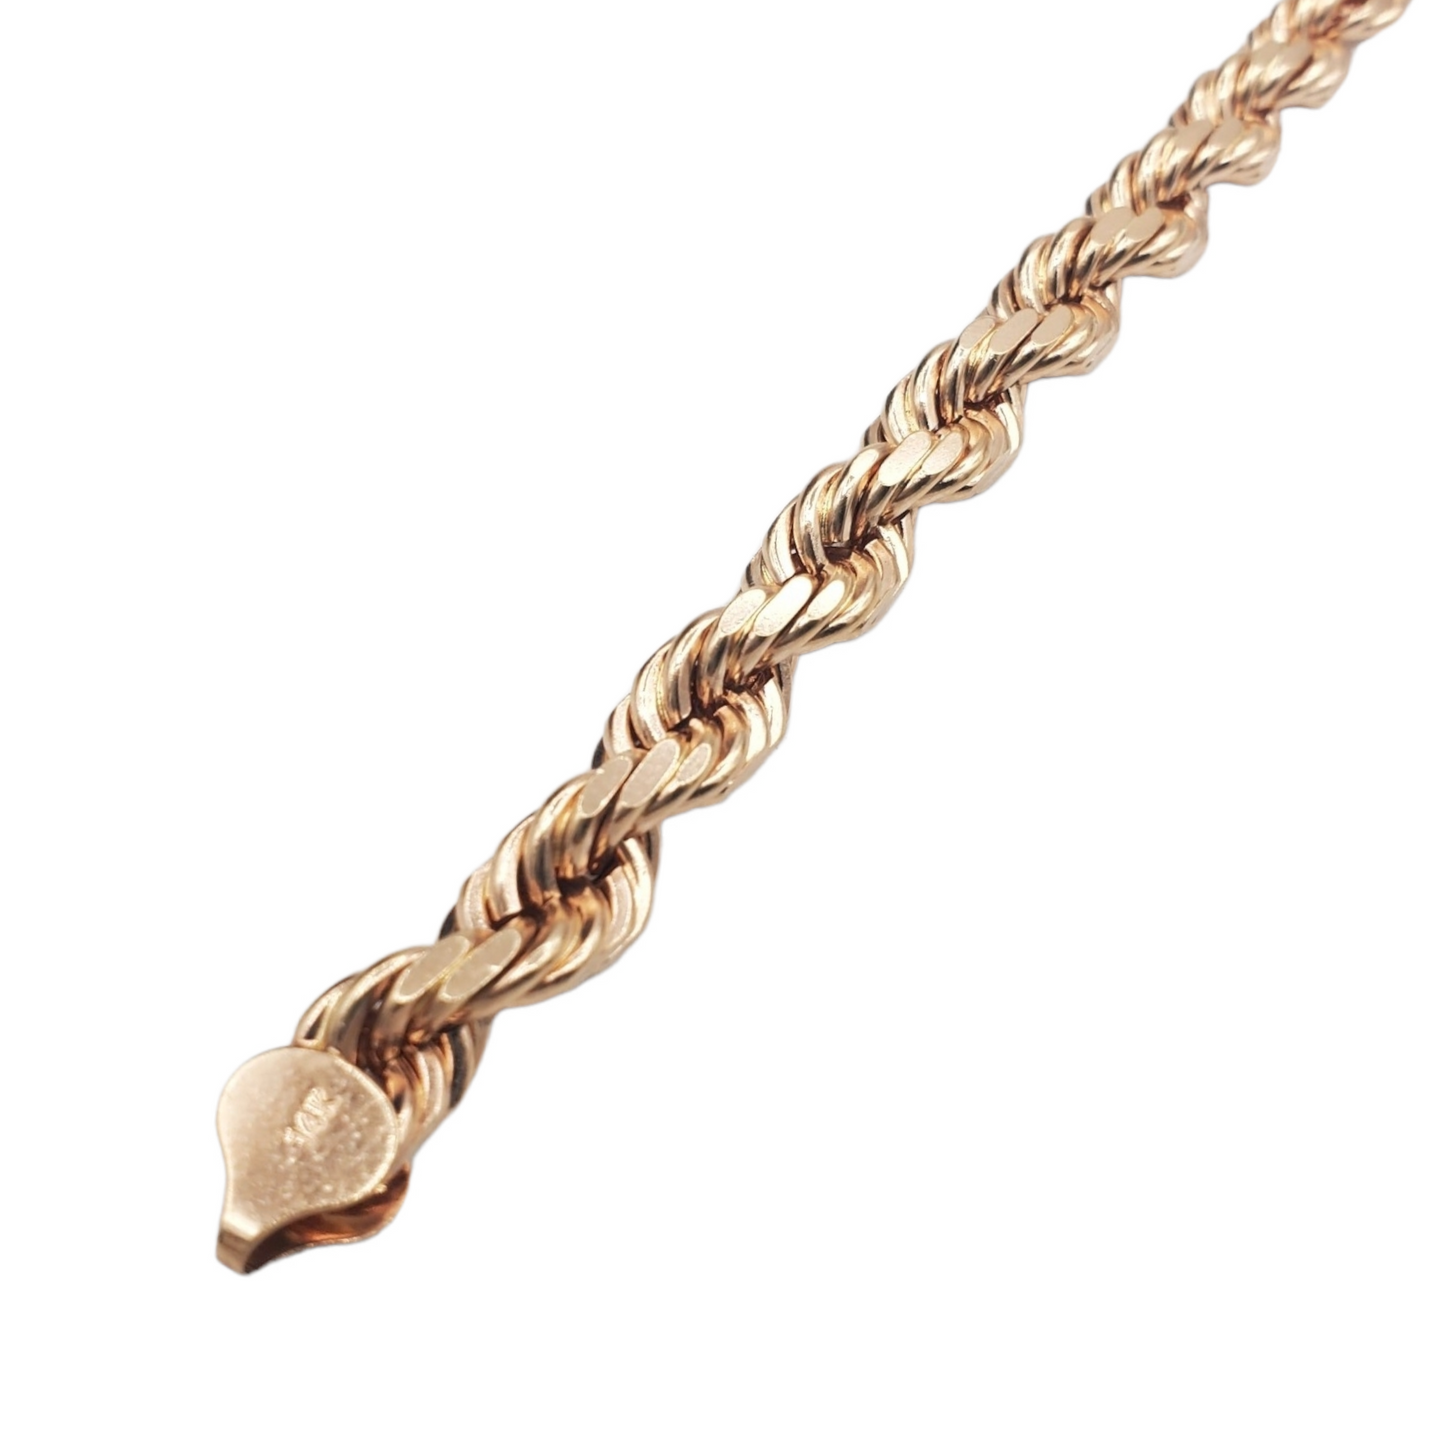 14K Rose Gold - Solid Rope Bracelet